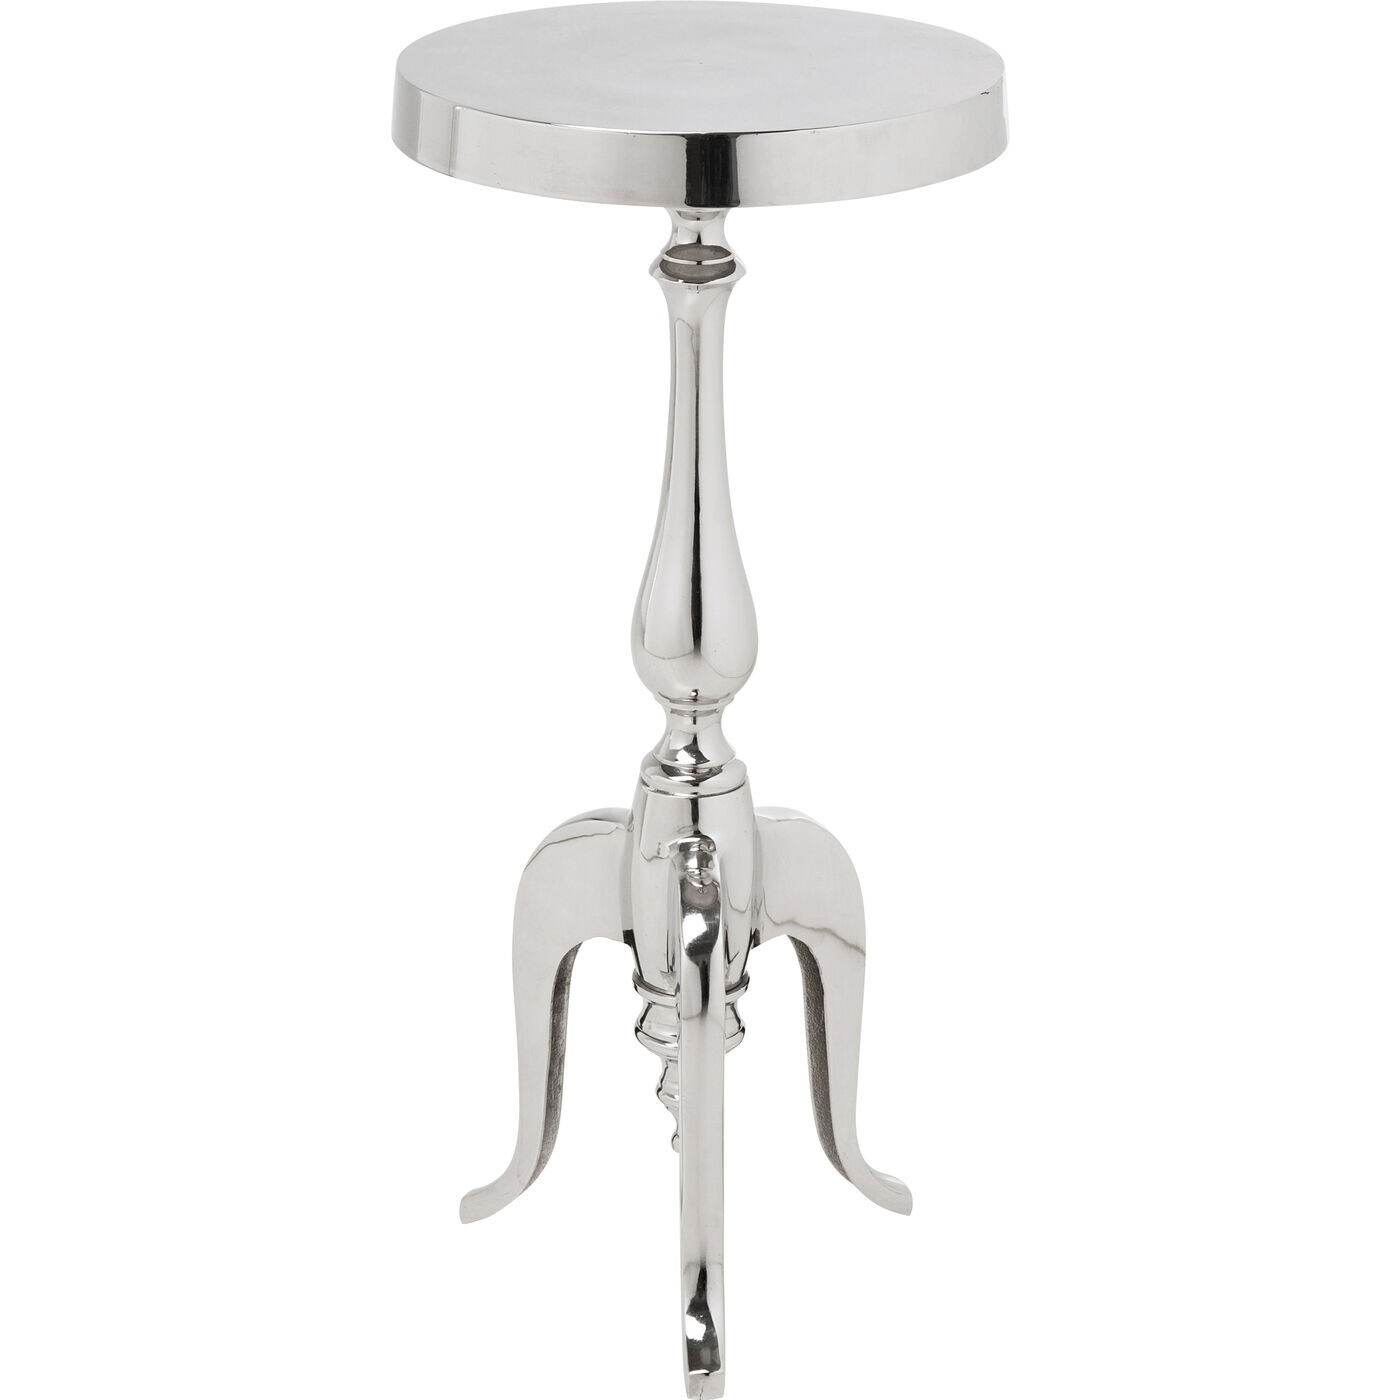 Приставной столик круглый серебряный с фигурной ножкой Barock 75596